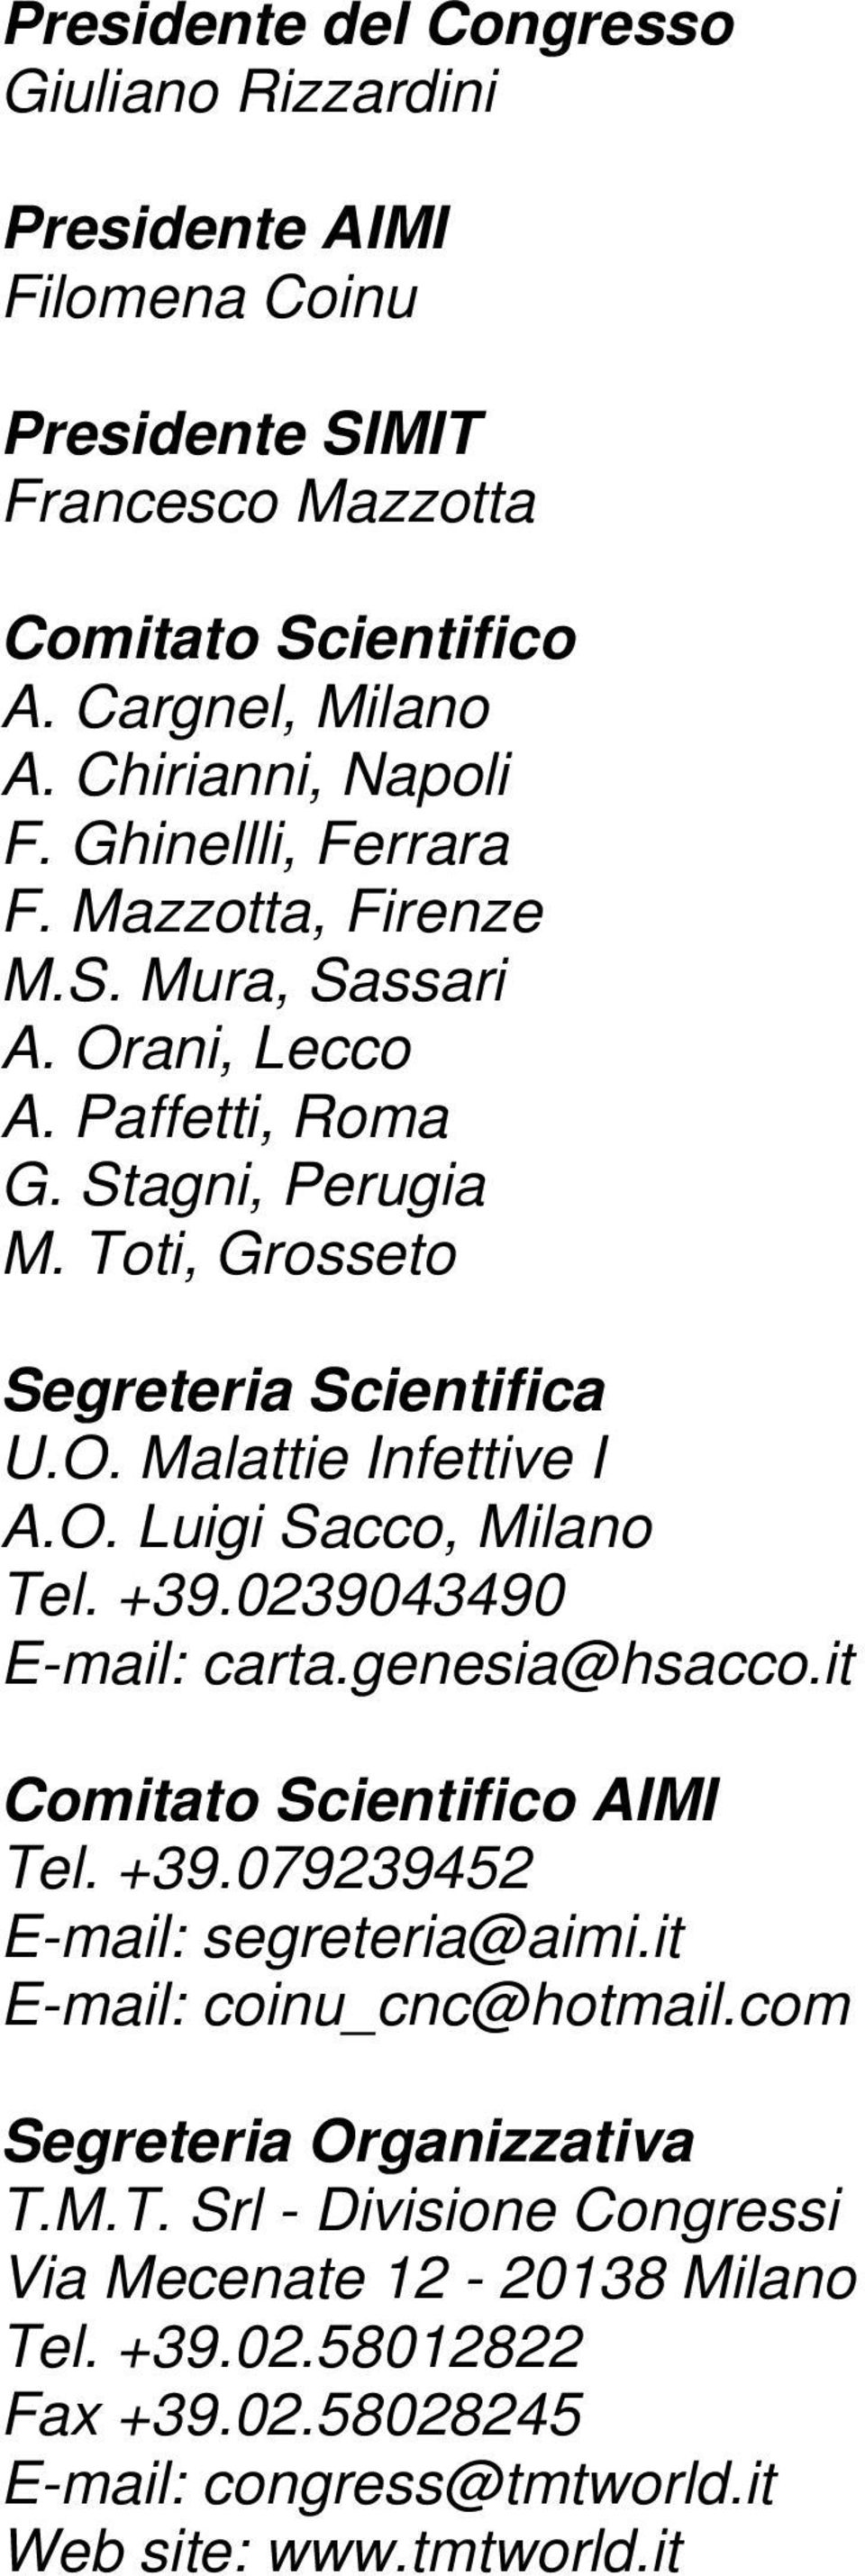 O. Luigi Sacco, Milano Tel. +39.0239043490 E-mail: carta.genesia@hsacco.it Comitato Scientifico AIMI Tel. +39.079239452 E-mail: segreteria@aimi.it E-mail: coinu_cnc@hotmail.